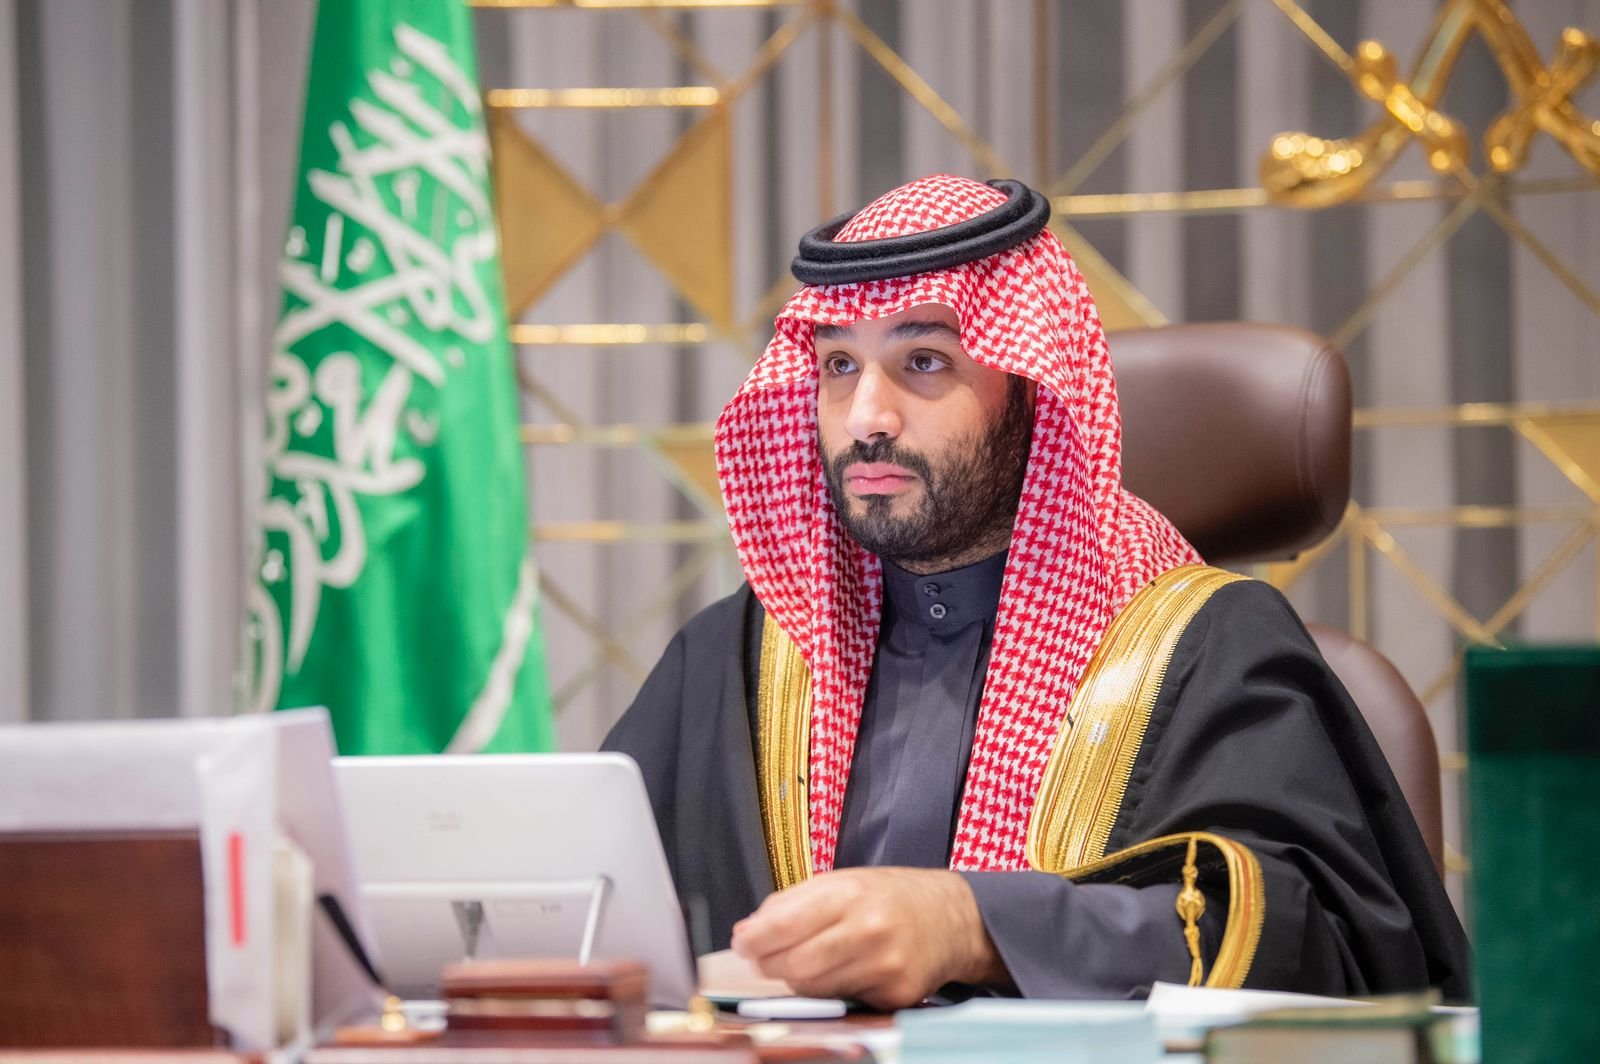 محمد بن سلمان: مستمرون العام القادم في زيادة جاذبية اقتصاد السعودية وتنويع الاقتصاد